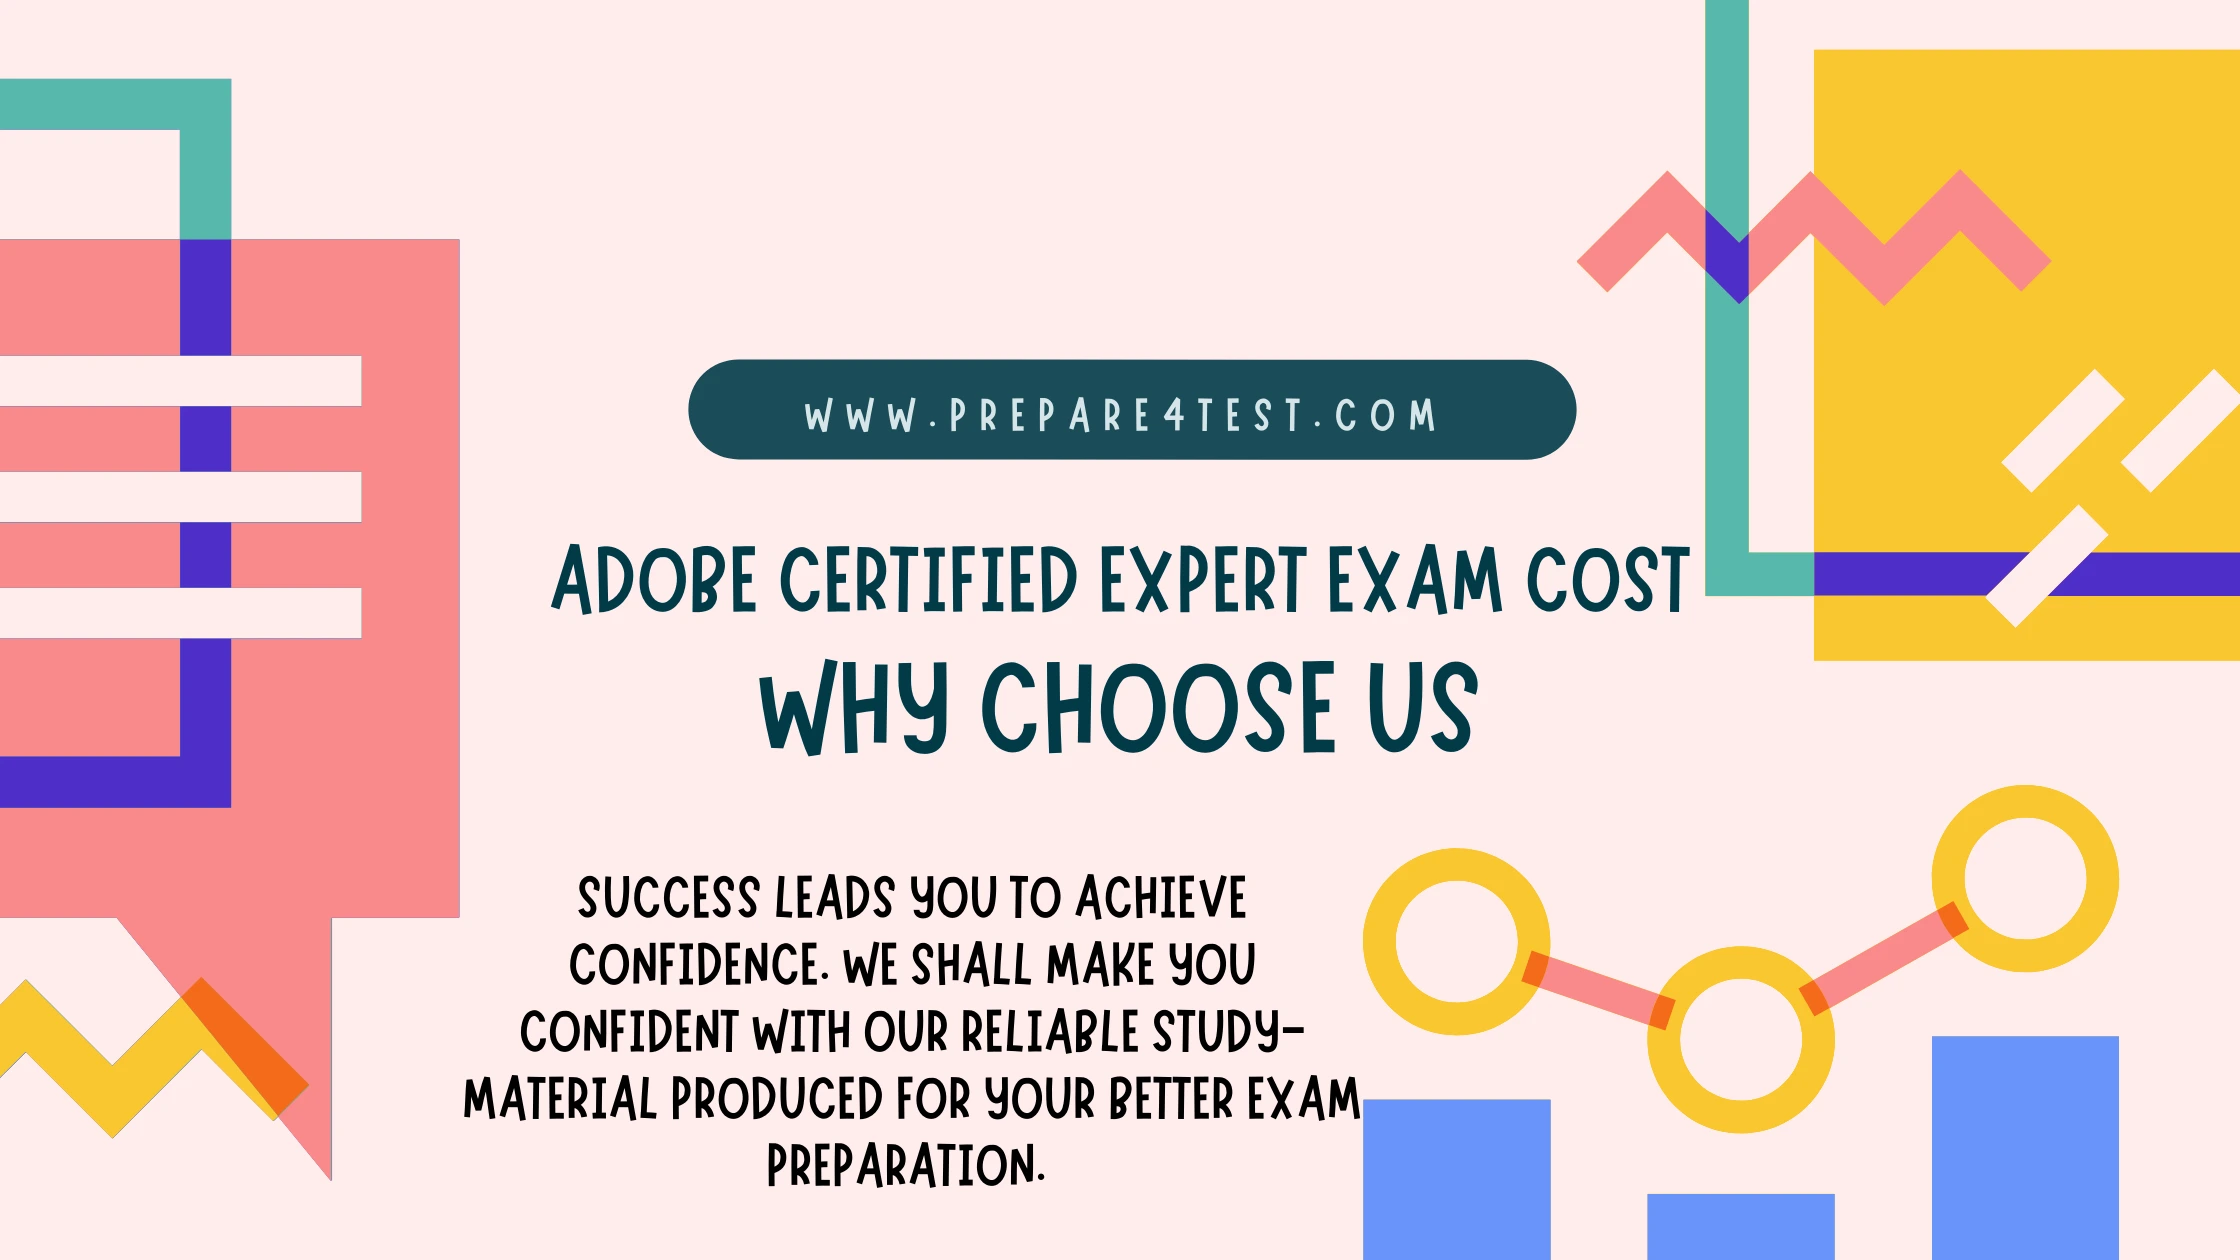 Adobe Certified Expert Exam Cost